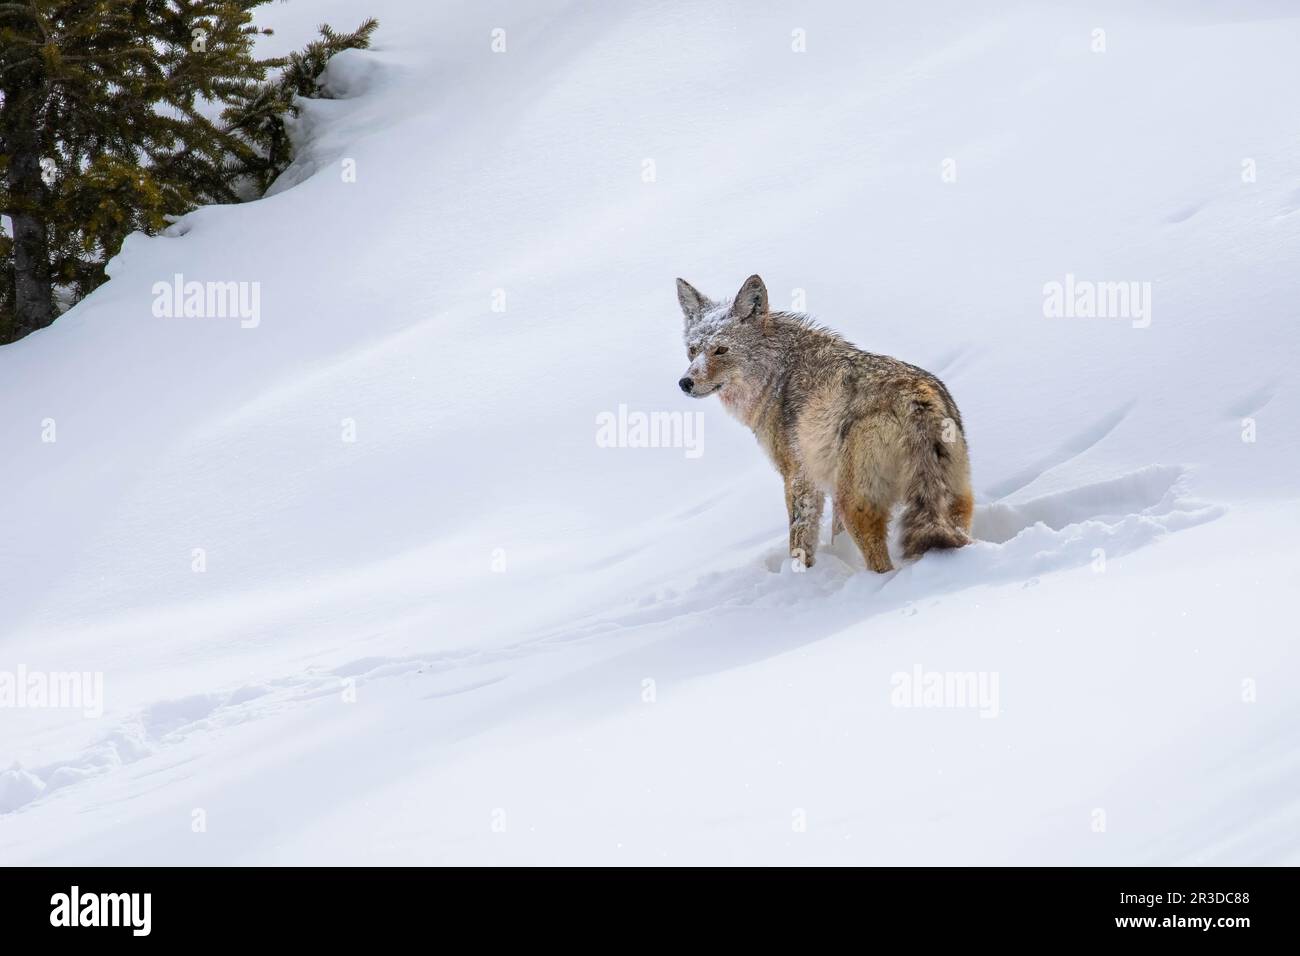 Un coyote du parc national de Yellowstone observe un groupe de loups au loin tandis qu'ils s'attaquent à un bison Banque D'Images